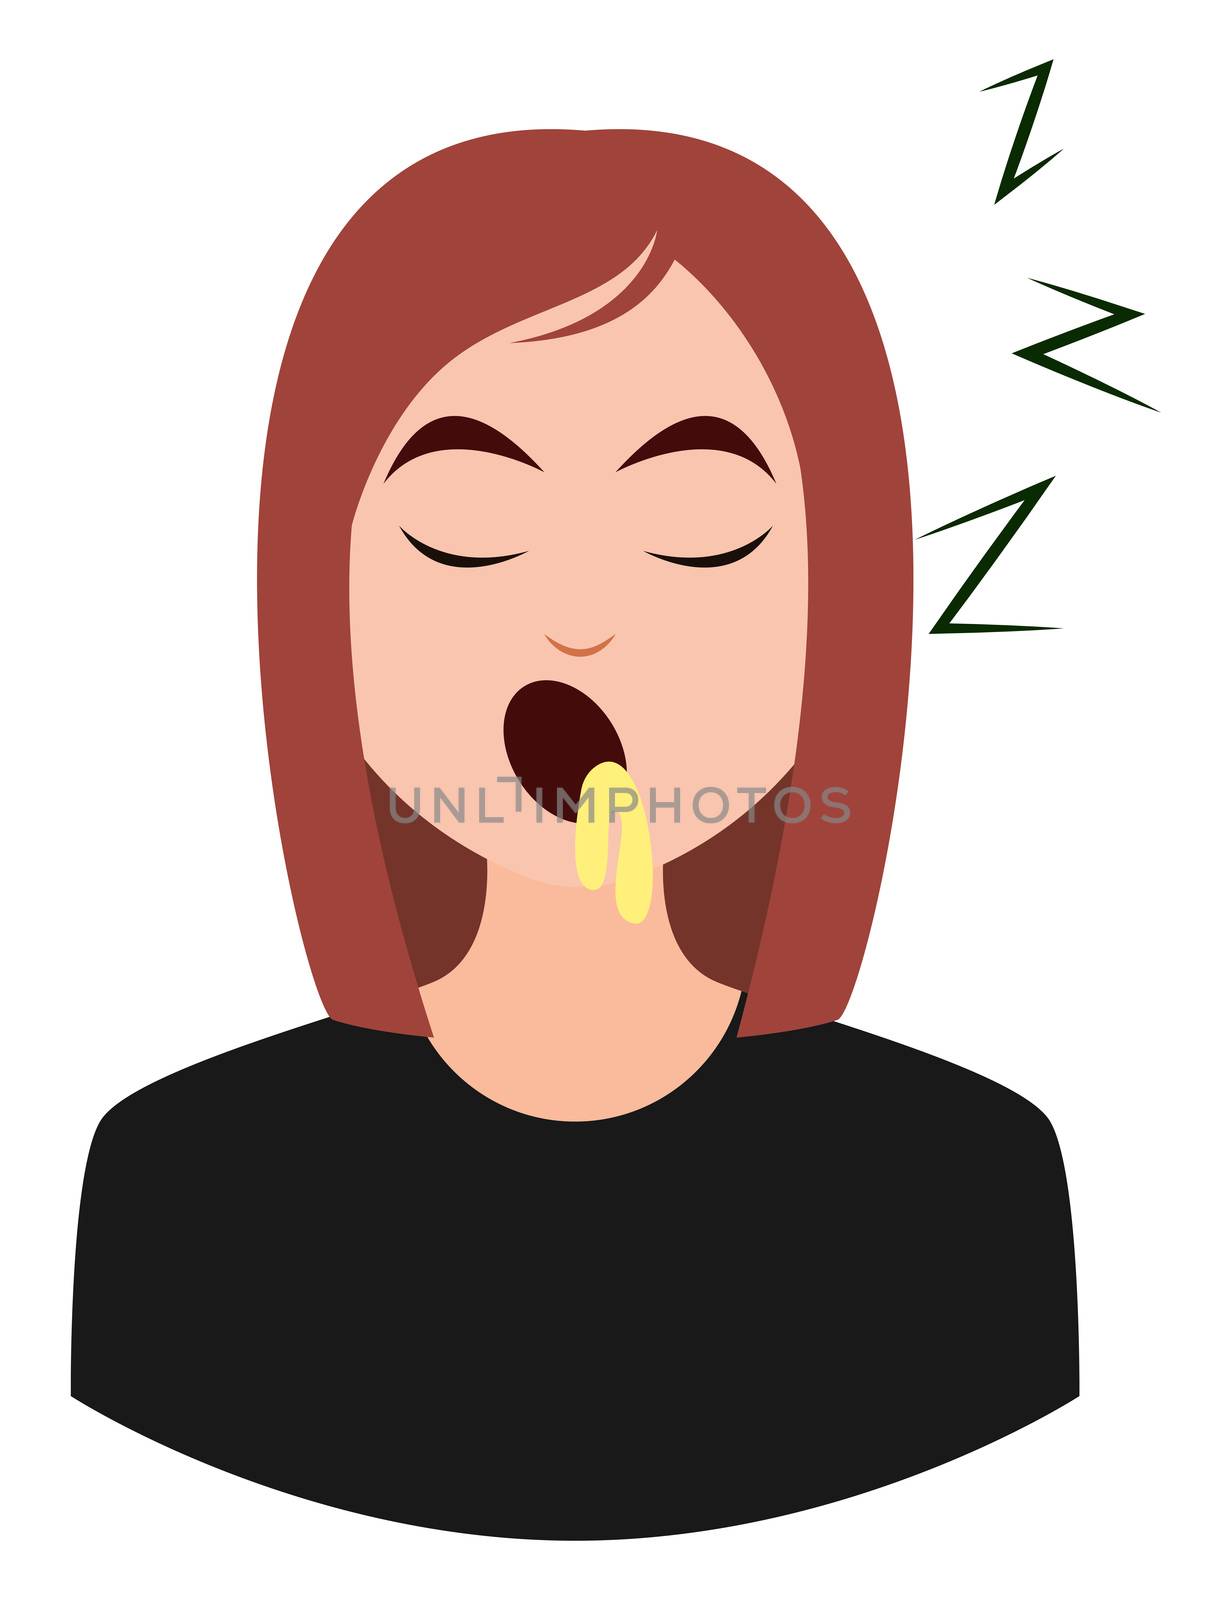 Sleepy girl emoji, illustration, vector on white background by Morphart